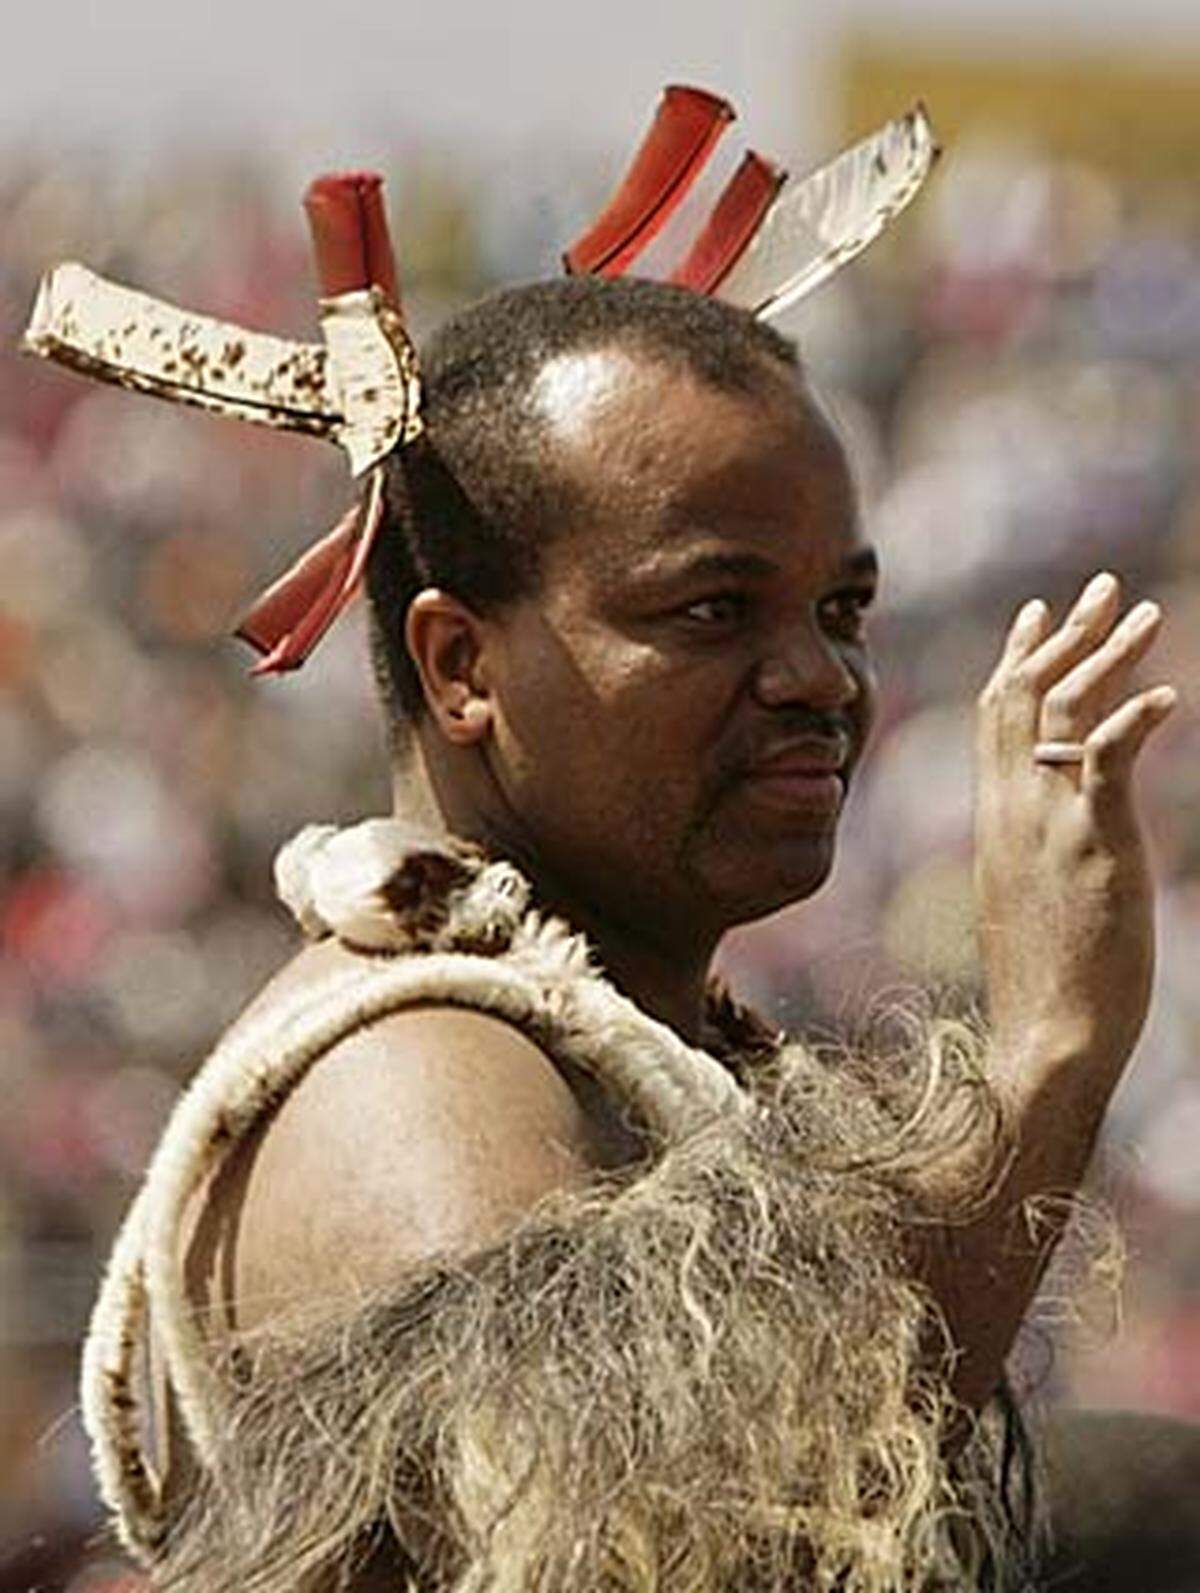 Mswati ist der letzte Monarch Afrikas. Er regiert mittels Dekreten und hat demokratische Reformen des Landes bisher nur sehr zögerlich in Angriff genommen. Politische Parteien gibt es in Swasiland immer noch keine.  König Mswati hat zehn Ehefrauen und gibt für seine Projekte Millionen aus, während die Bevölkerung hungert. Neuestes Projekt: Ein Palast für seine Verwandten um 15 Millionen Dollar. Seine Regierungsführung ist zweifelhaft: 2001 wurden einige Zeitungen verboten - Mswati gab später zu, das Gesetz niemals gelesen zu haben.